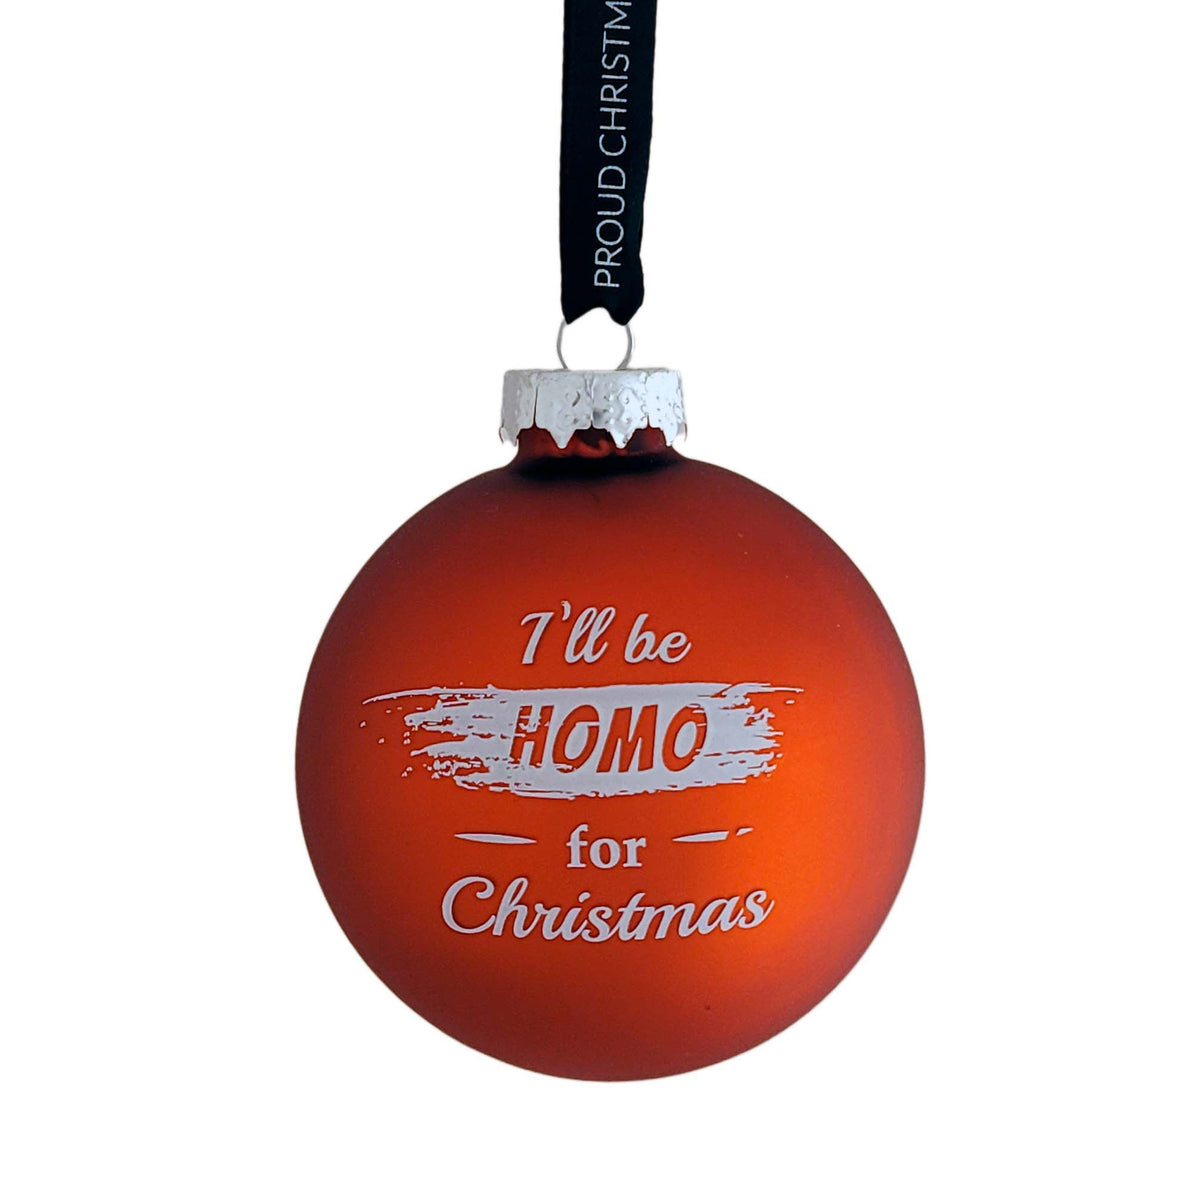 I'll be Homo for Christmas